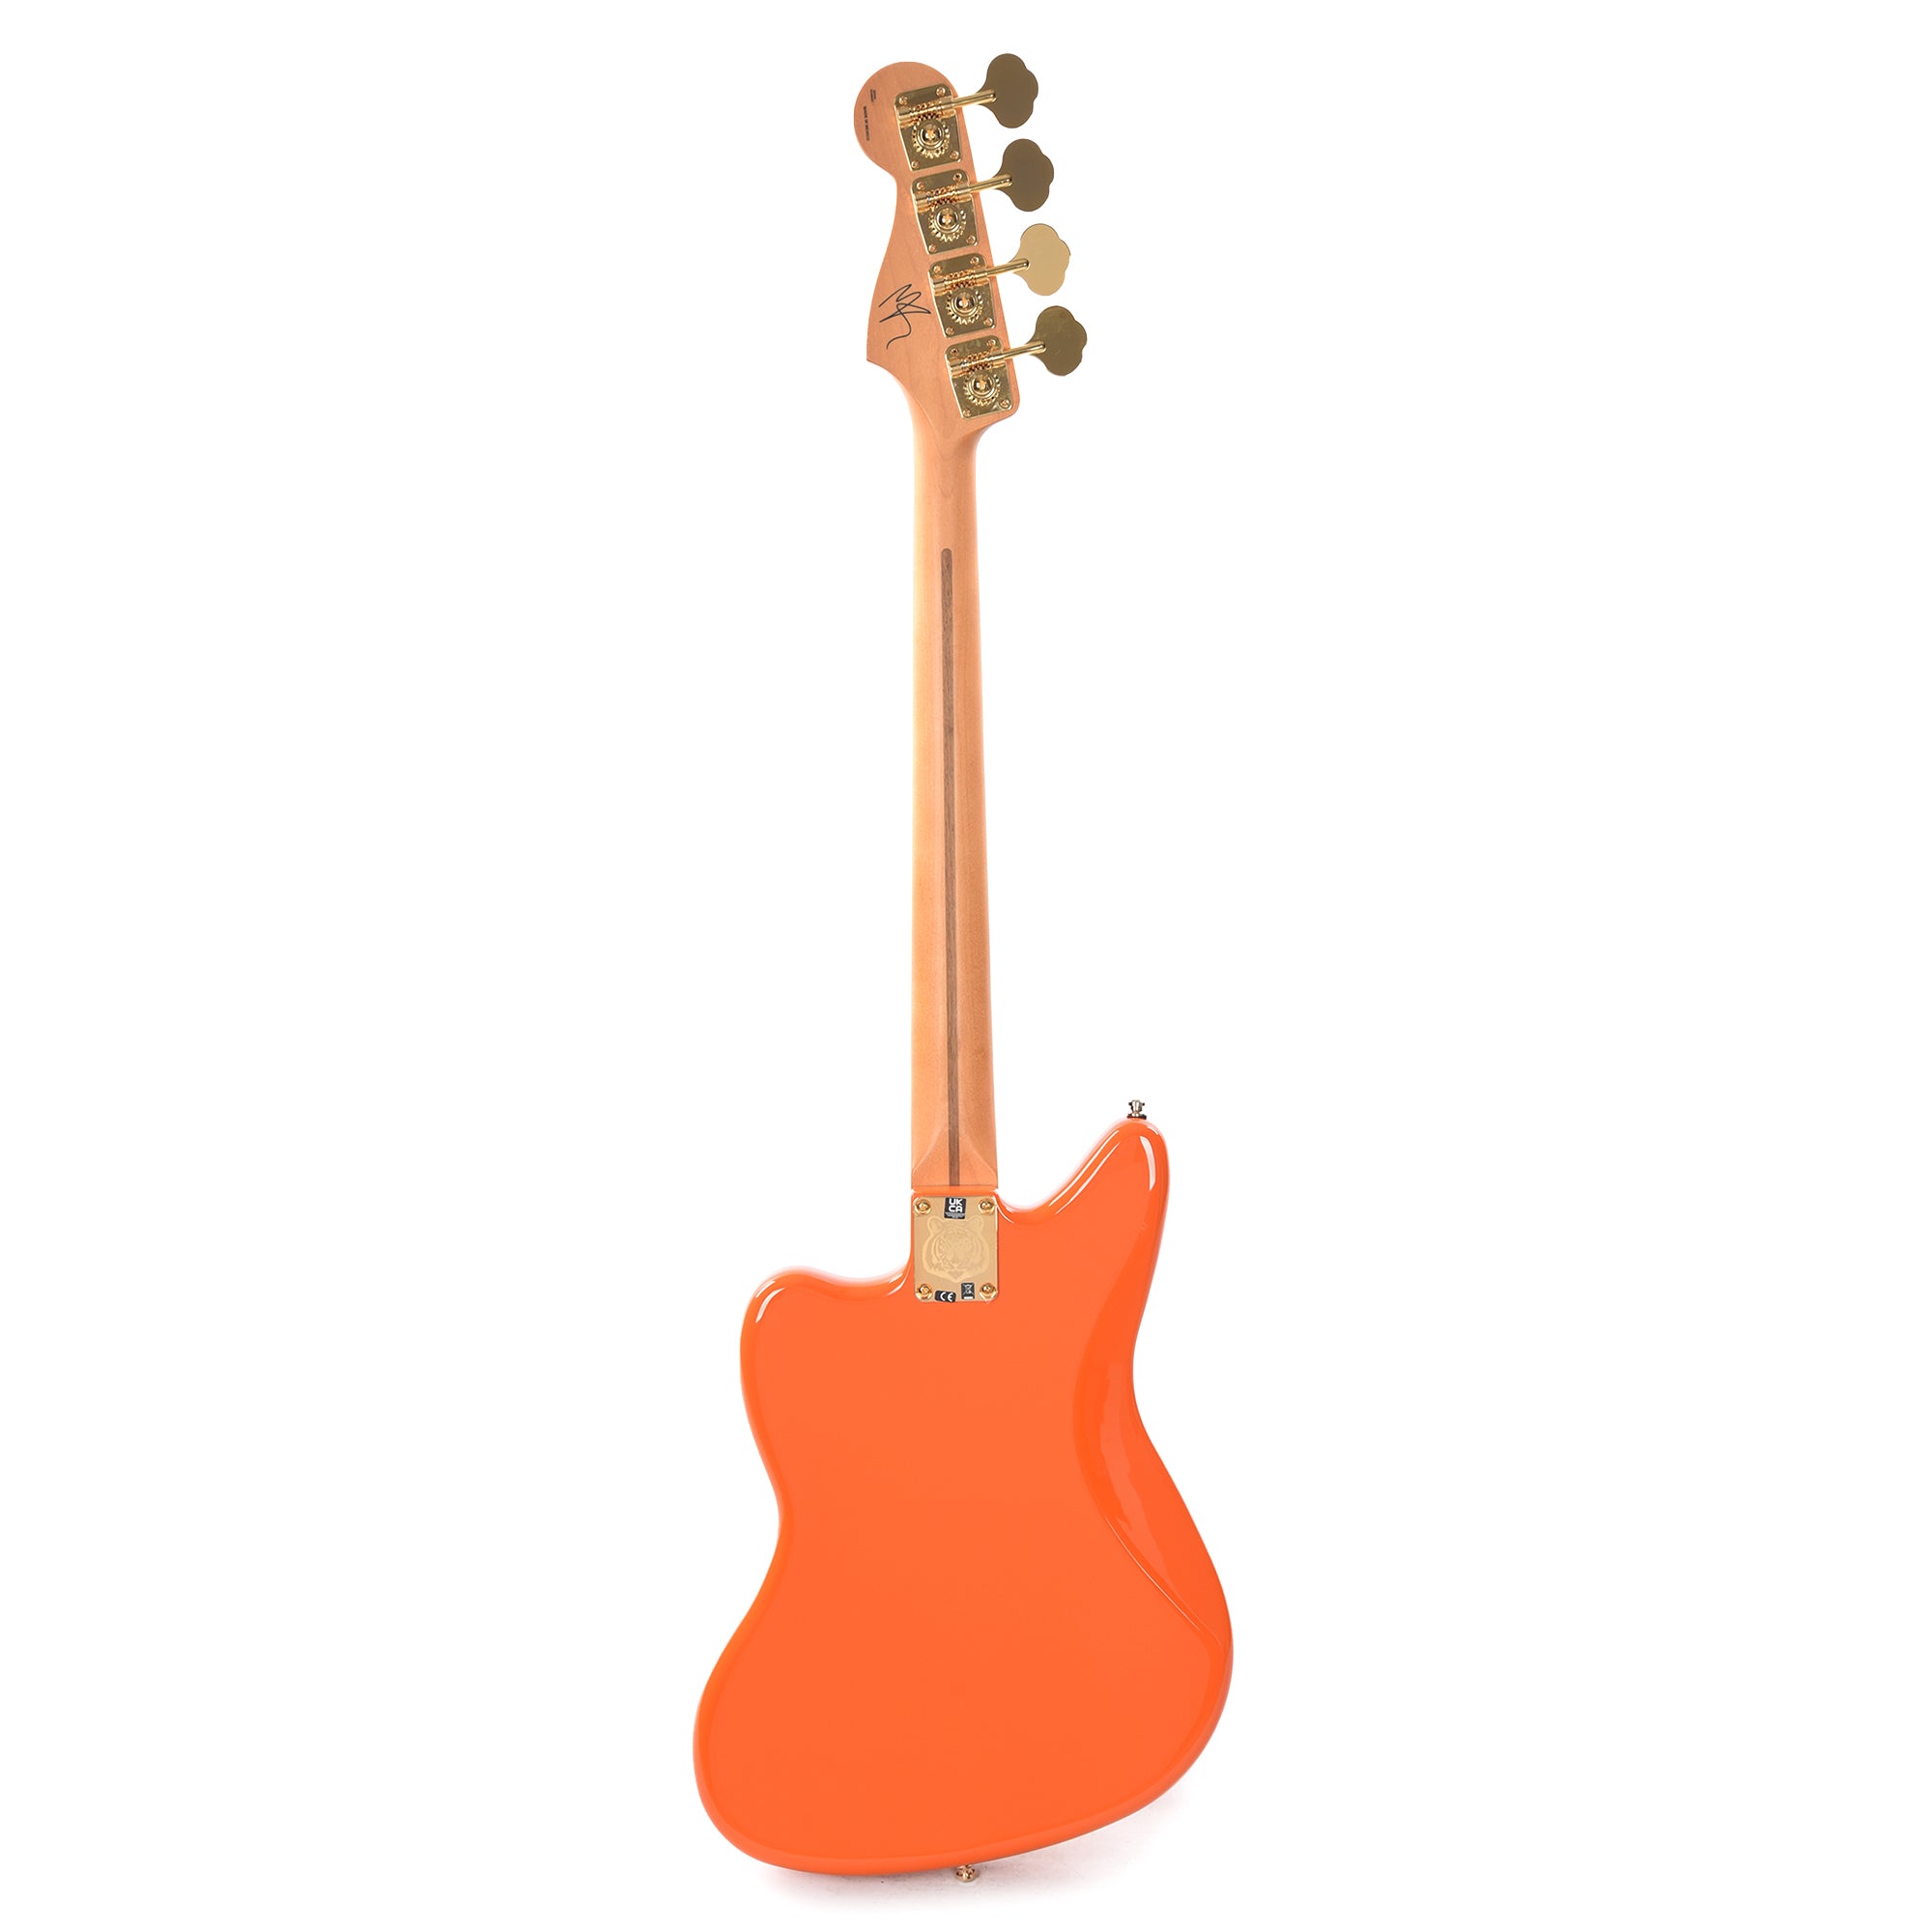 Fender Artist Limited Edition Mike Kerr Jaguar Bass Tiger's Blood Orange